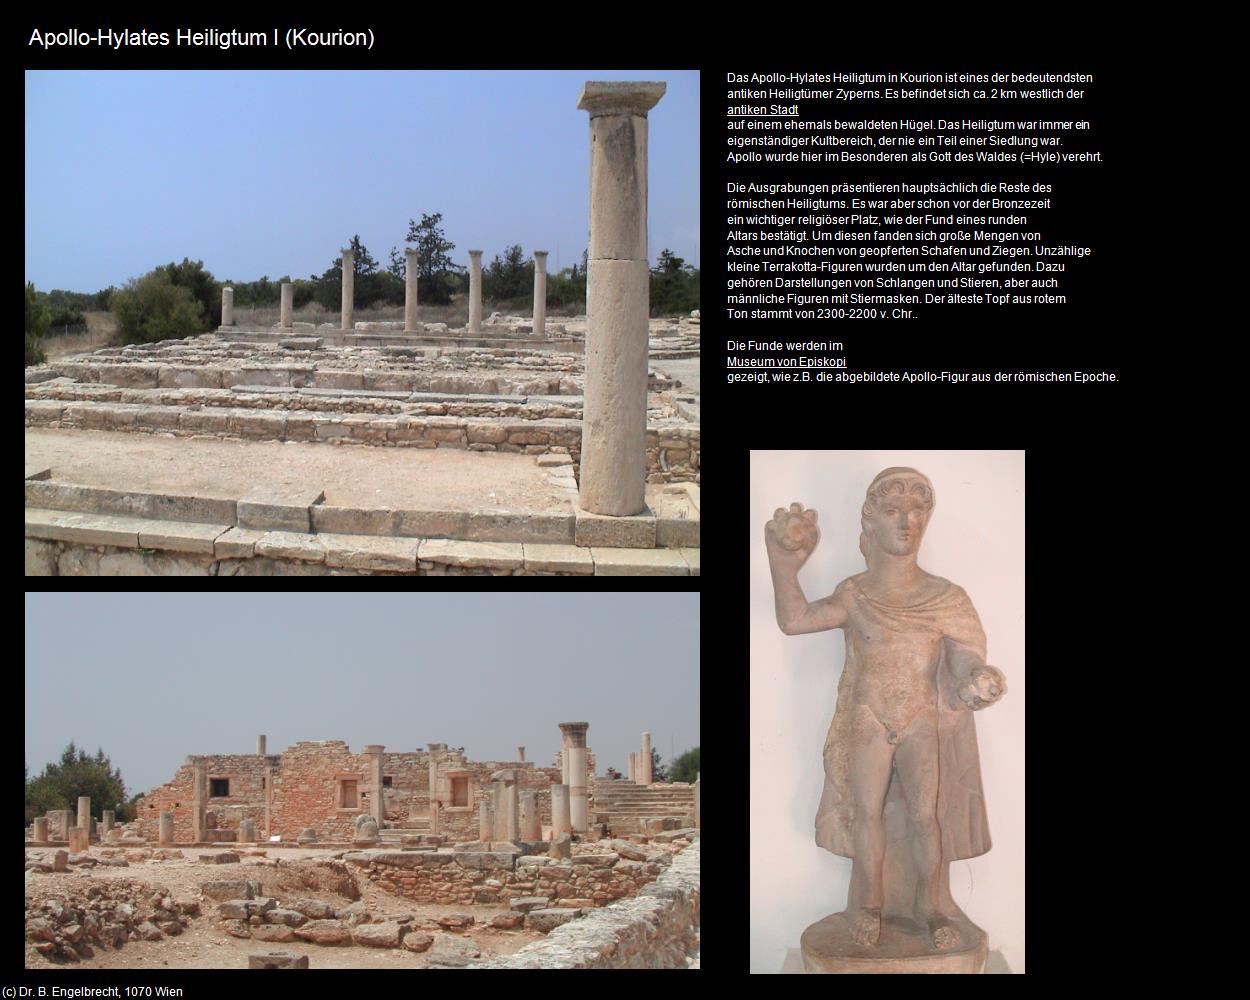 Apollo-Hylates Heiligtum I (Kourion) in ZYPERN-Insel der Aphrodite(c)B.Engelbrecht